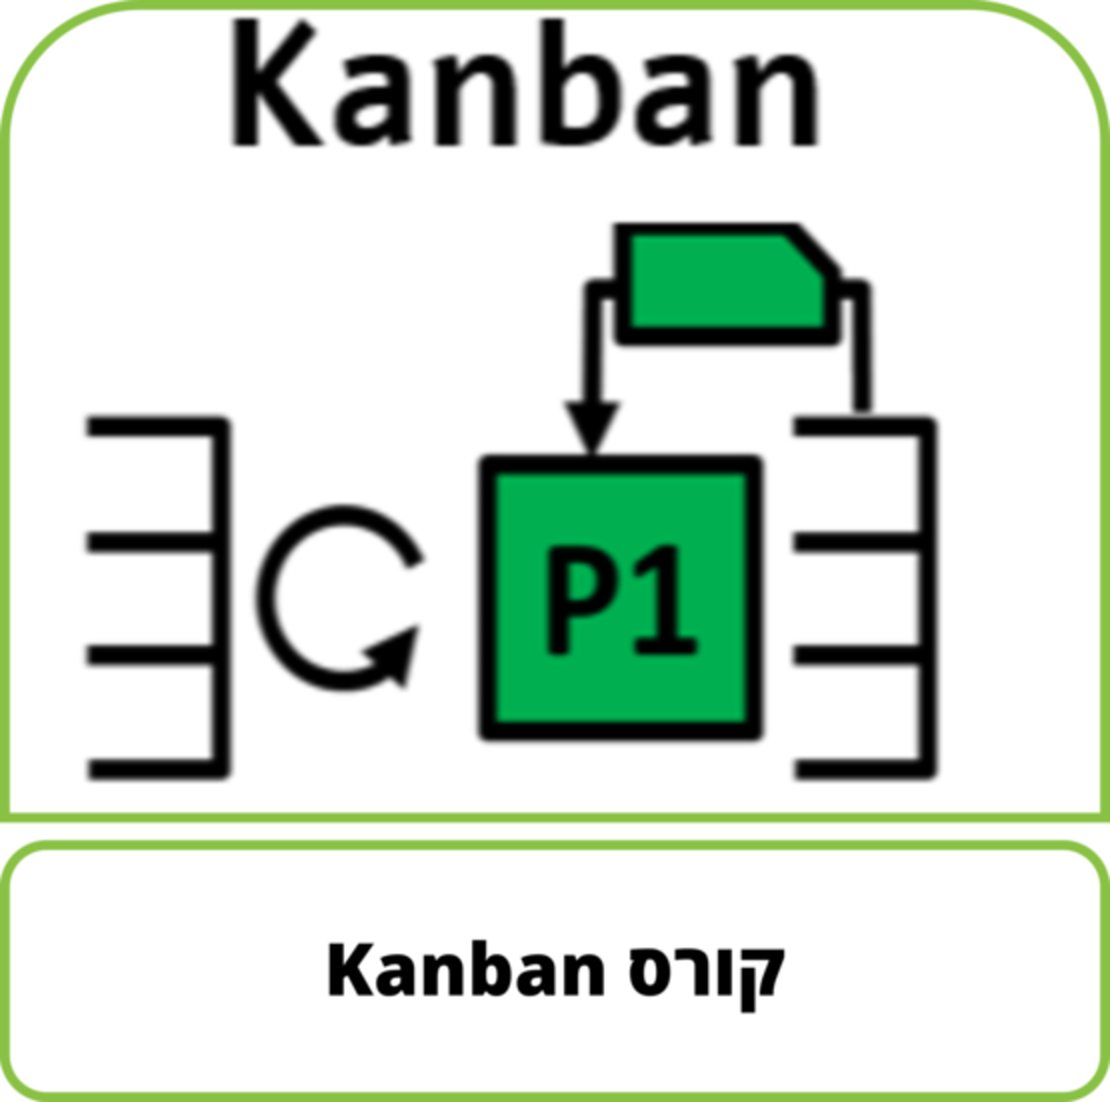 קורס דיגיטלי - קורס Kanban